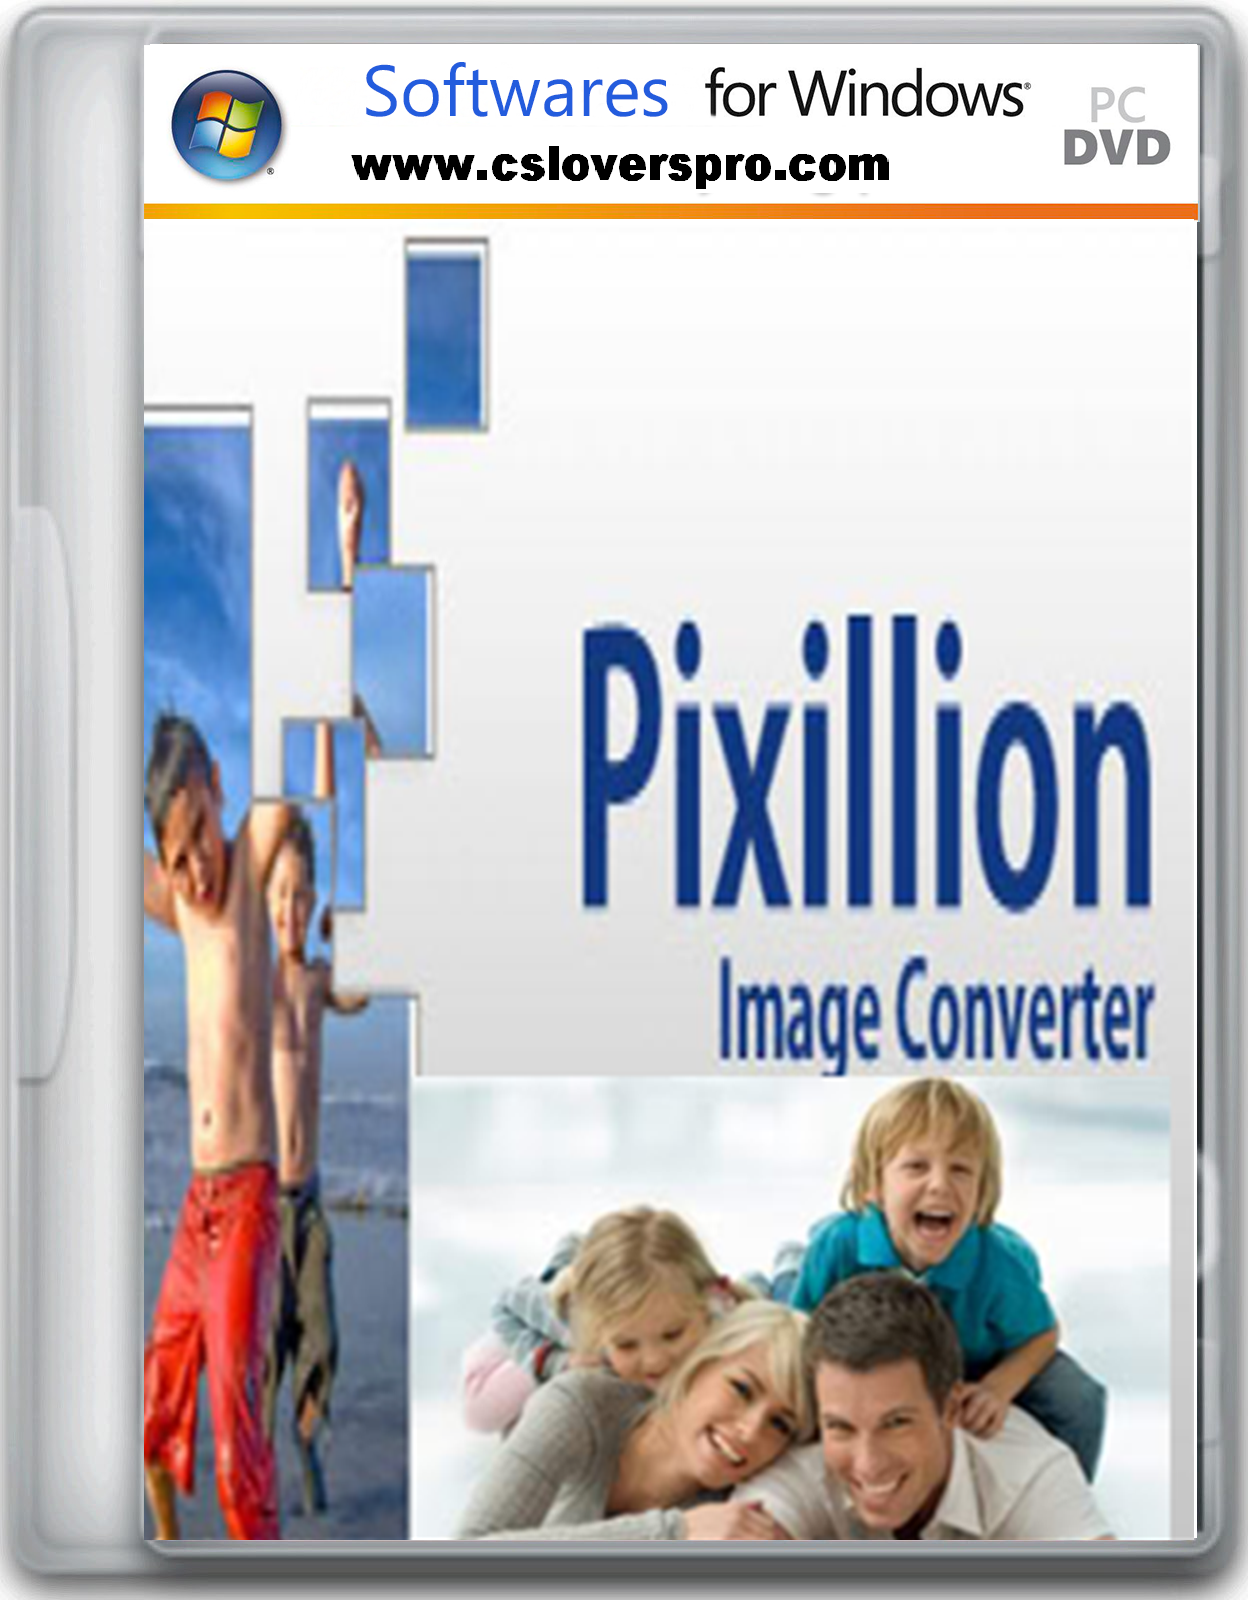 Pixillion image converter software free download download internet download manager registered version for free